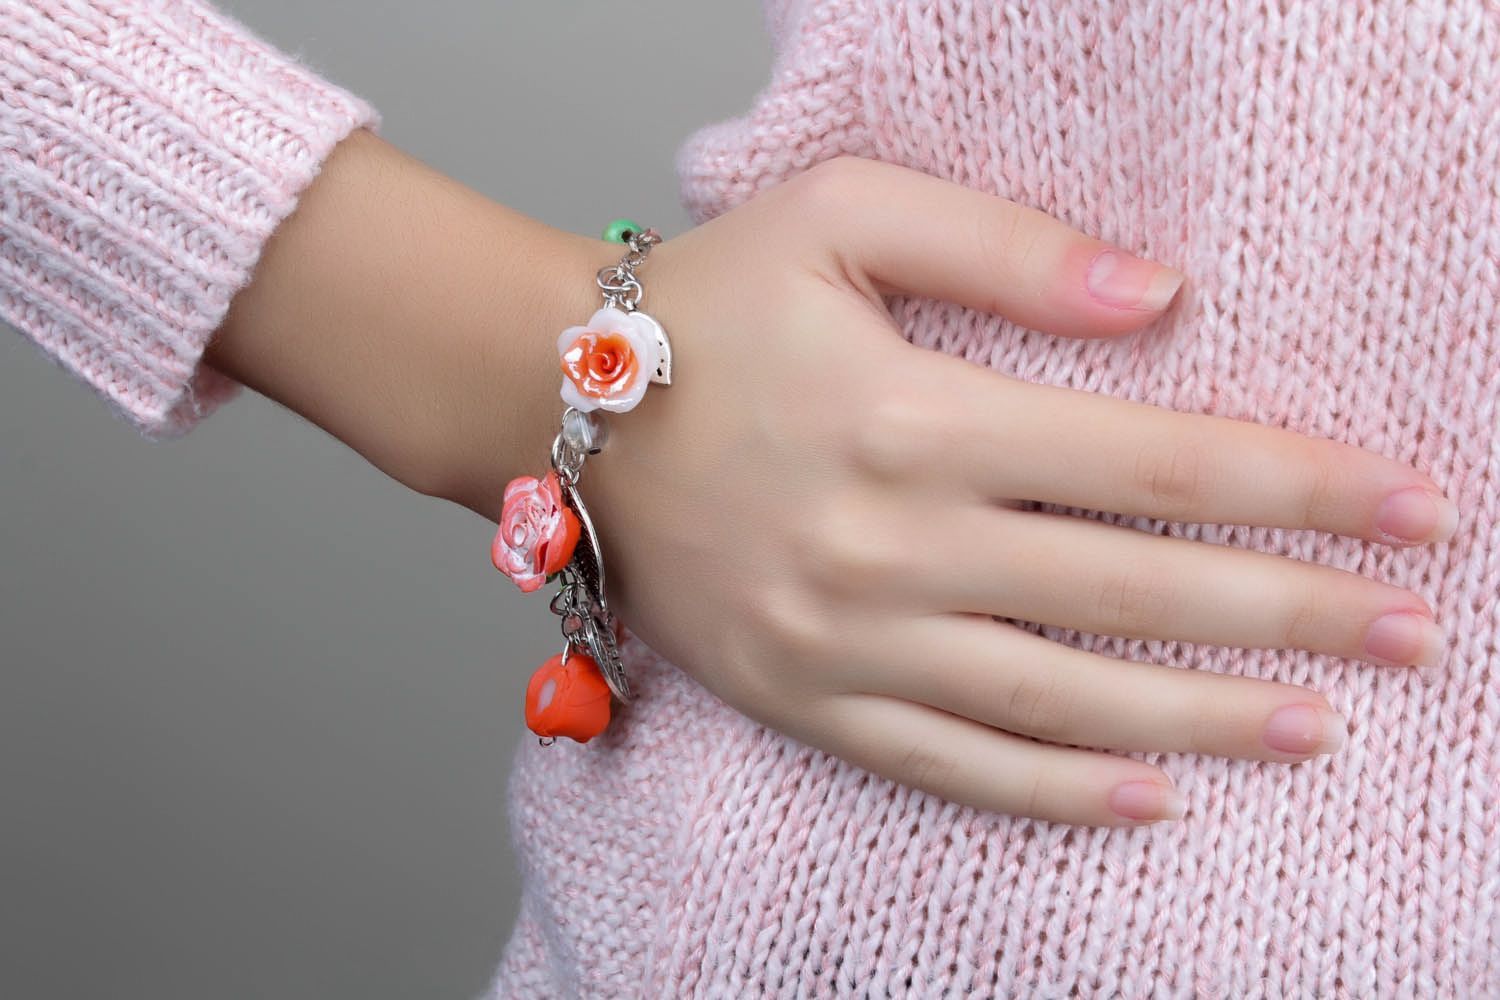 Floral wrist bracelet photo 4